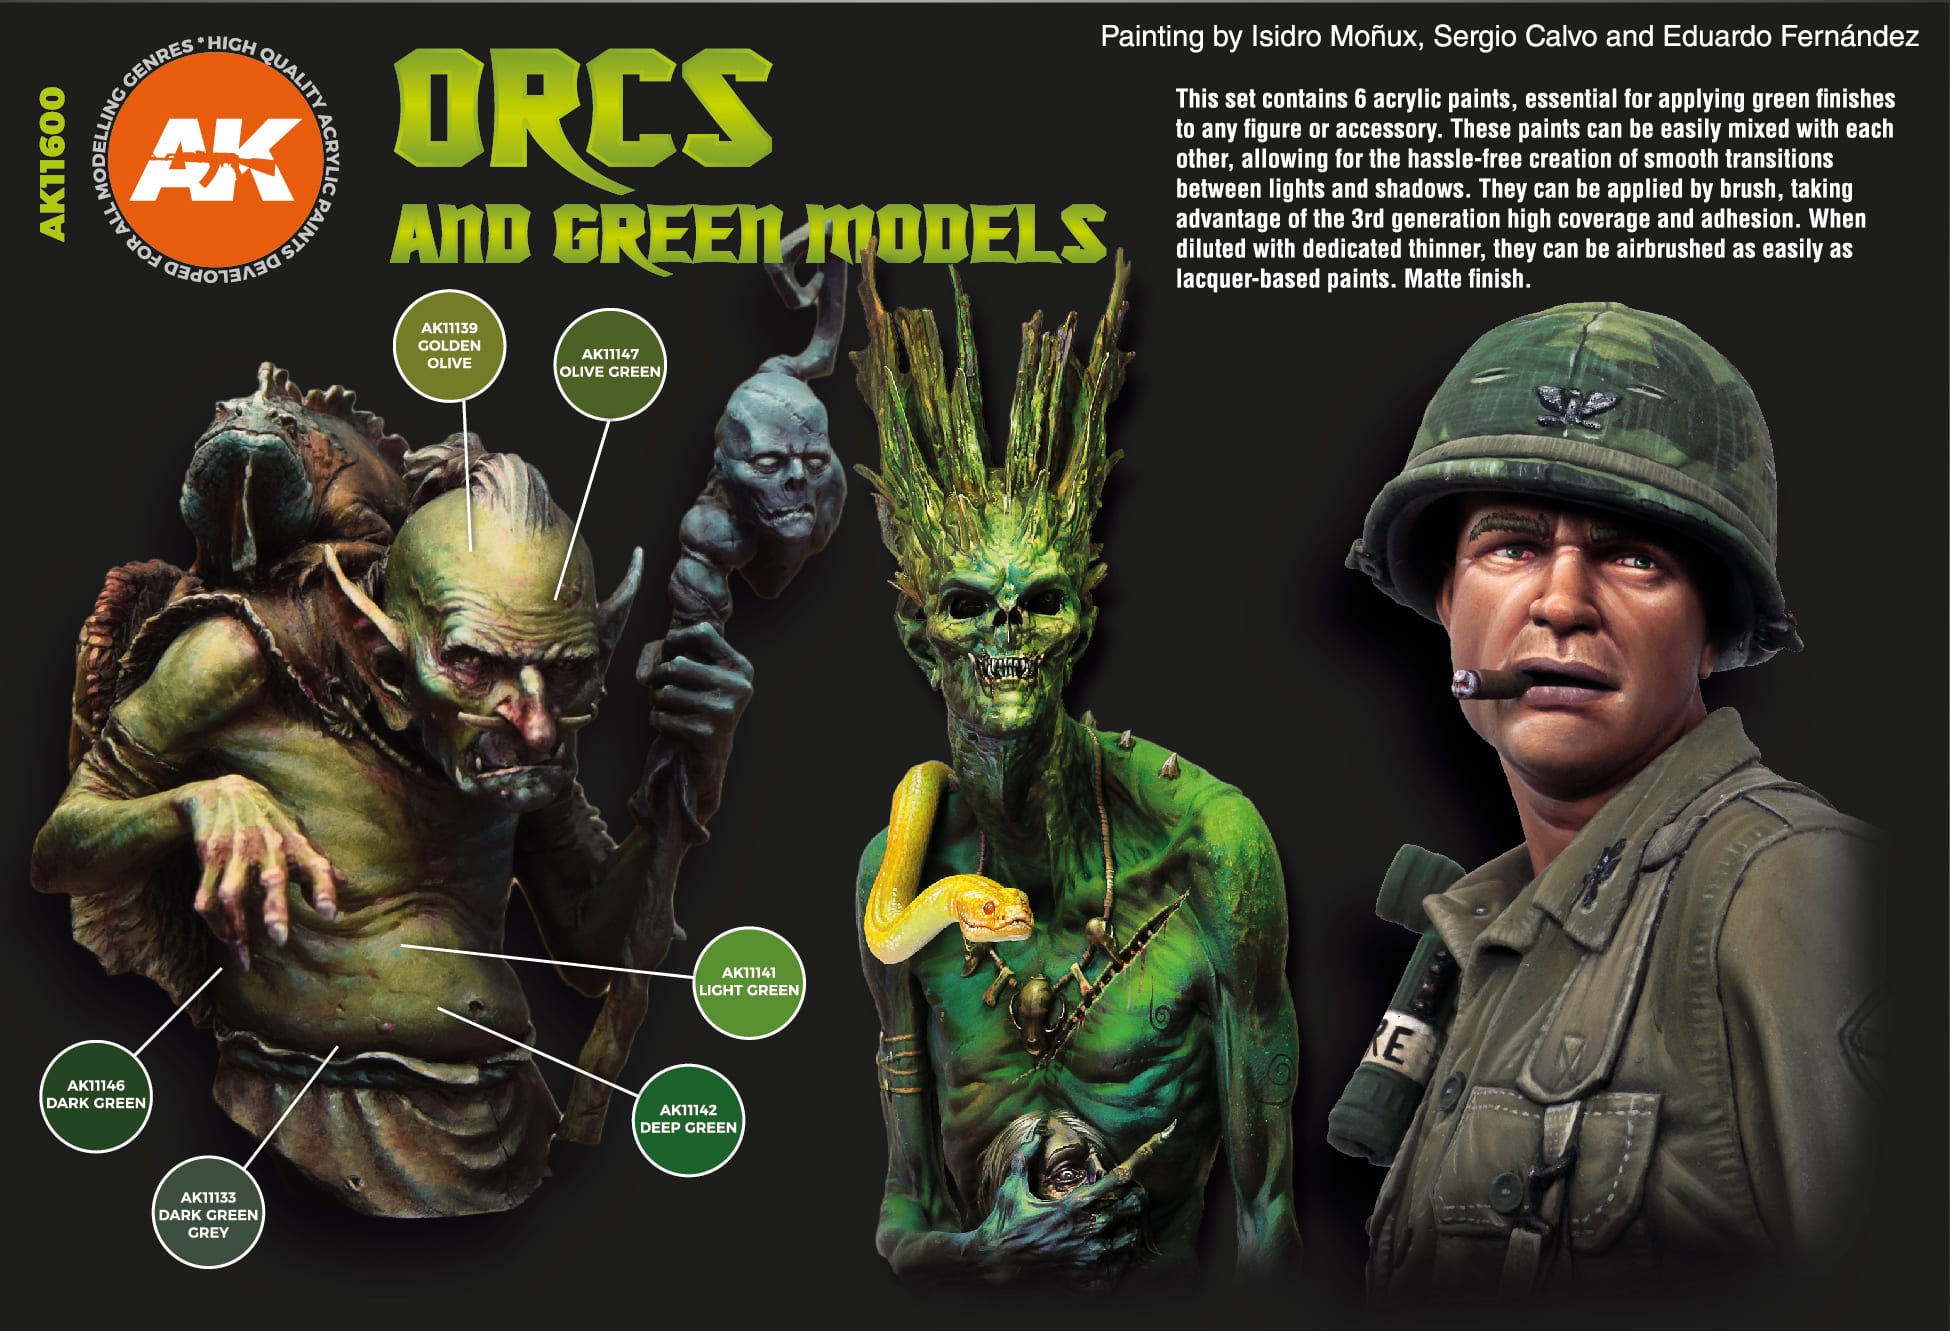 ORCS AND GREEN MODELS SET